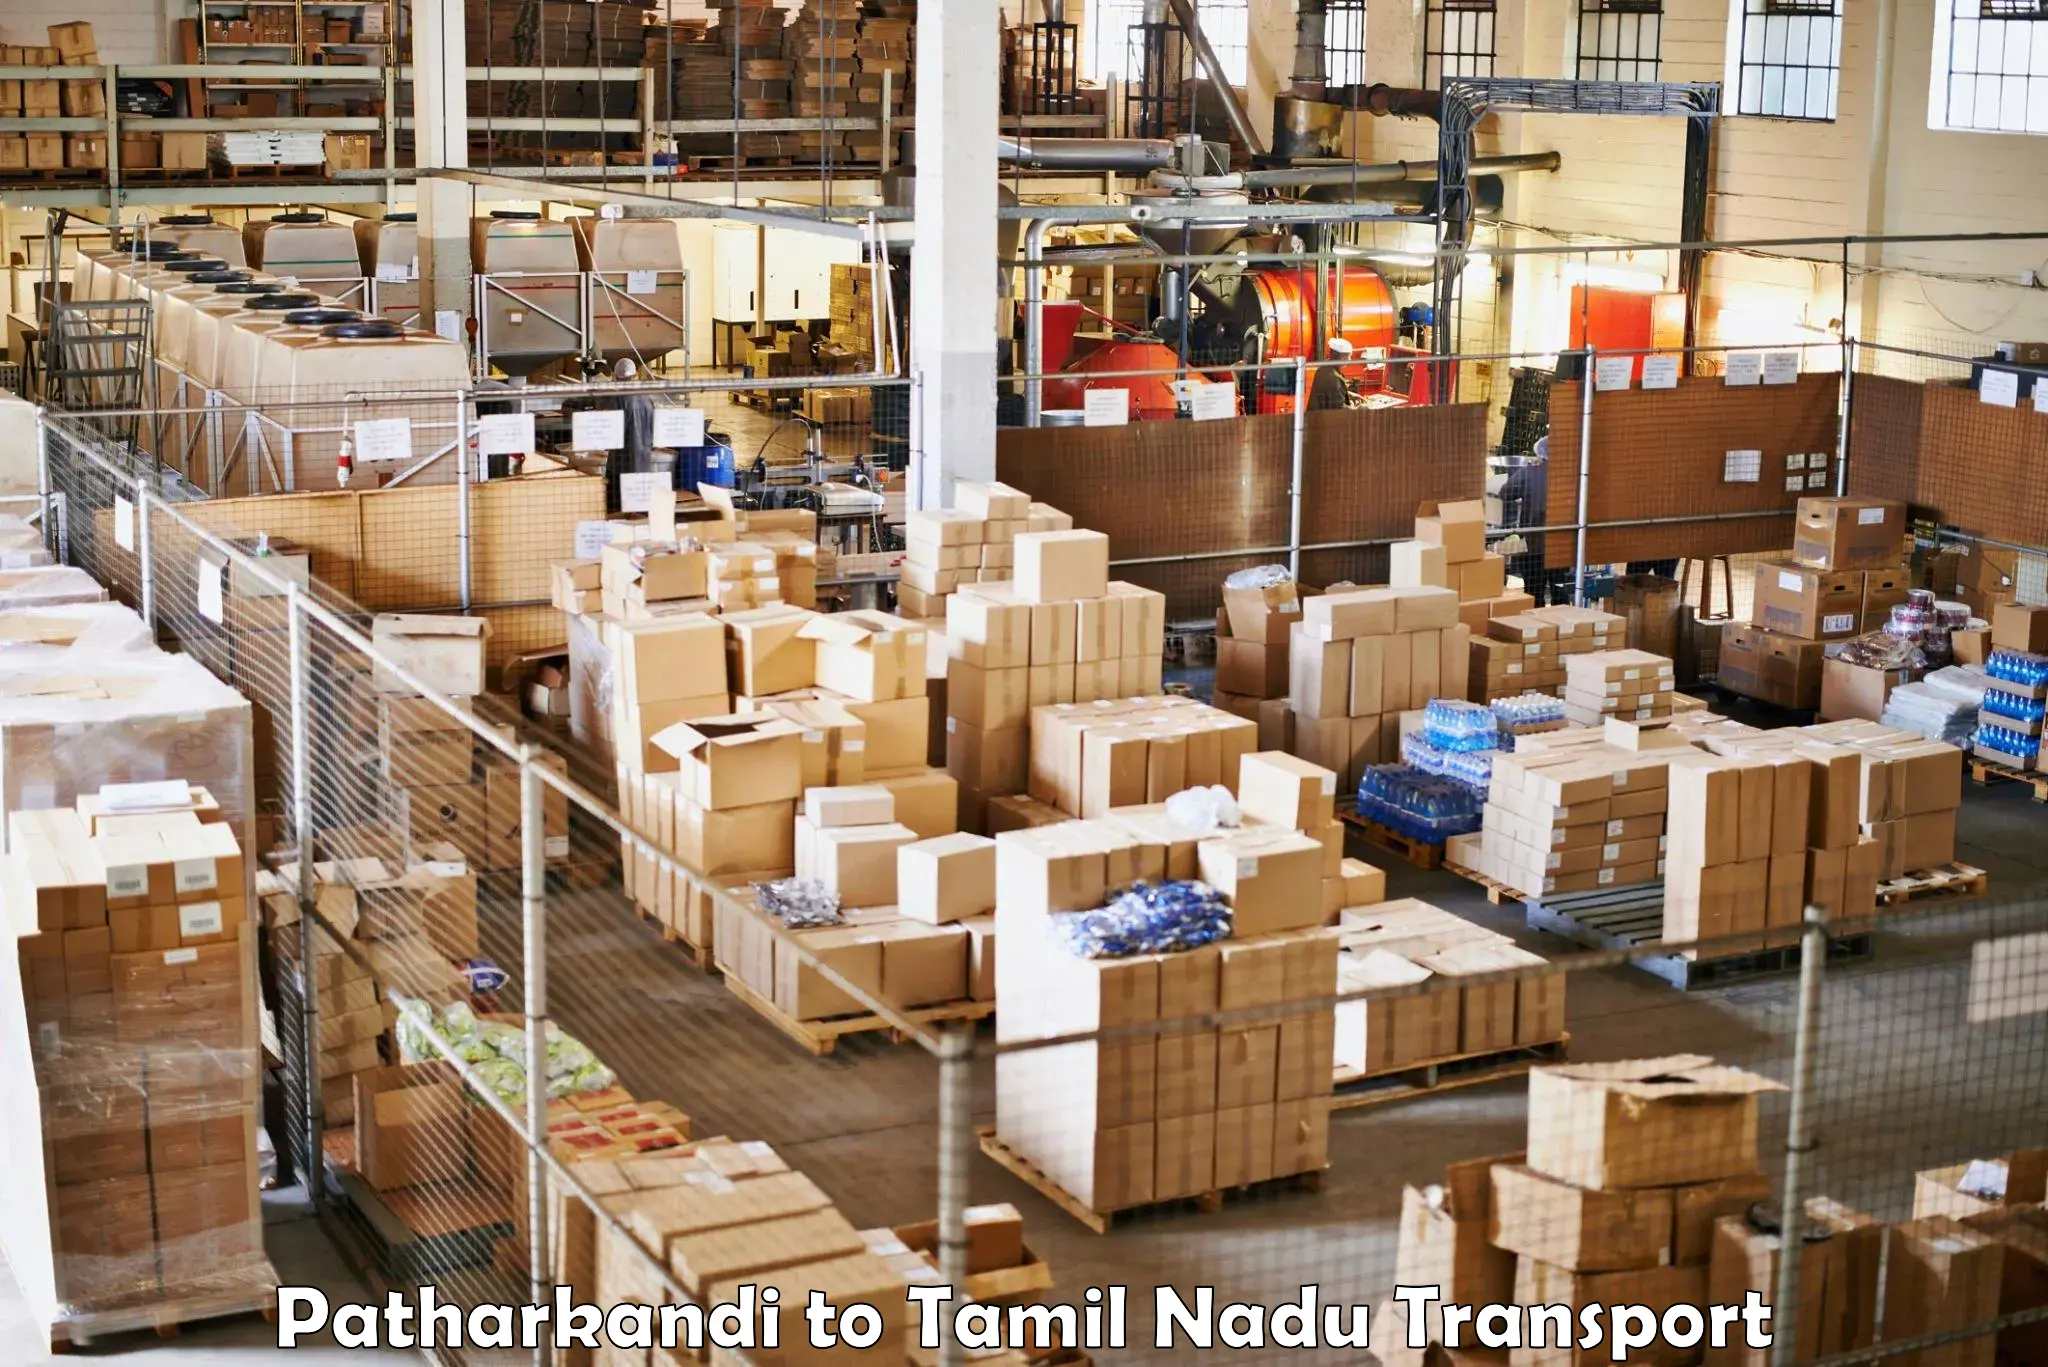 All India transport service Patharkandi to Tamil Nadu